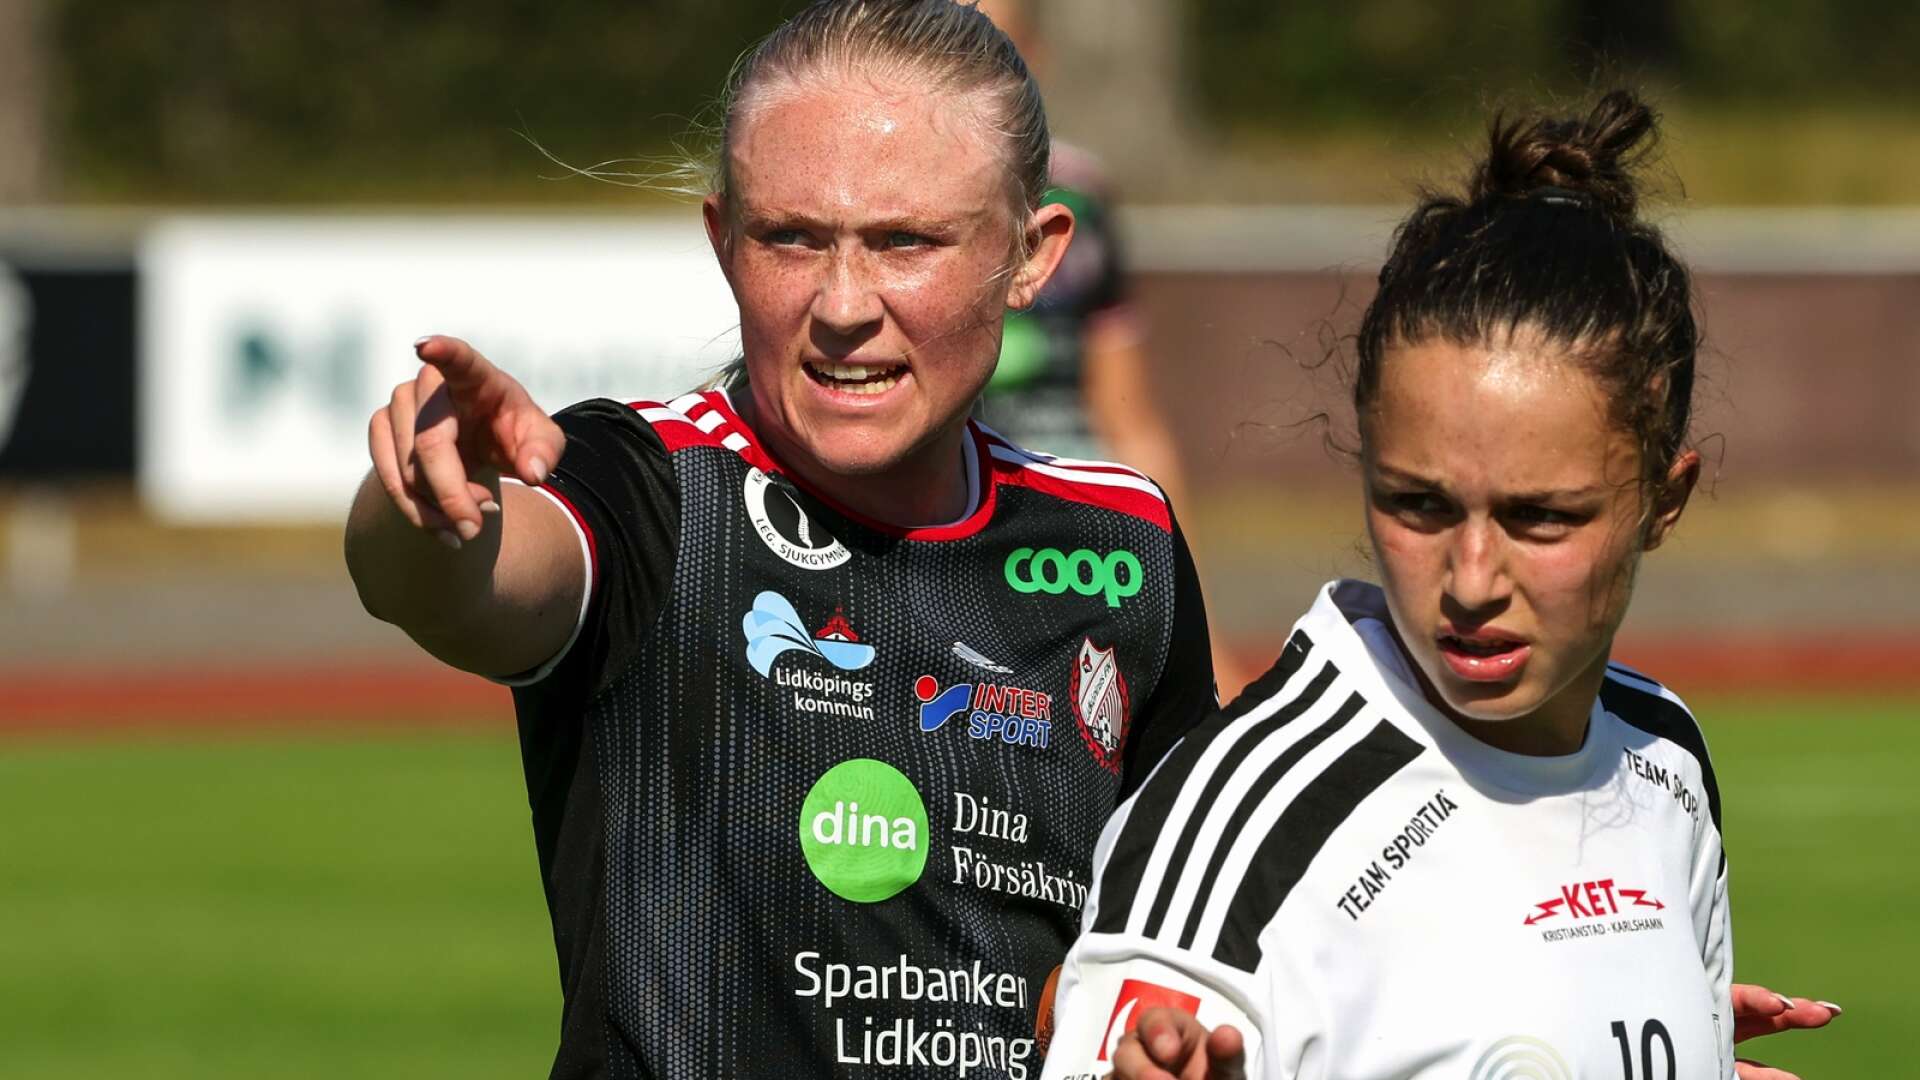 Emilia Bengtssons fotbollskarriär har tagit en ny riktning. På söndagen var hon tillbaka på Framnäs, när LFK vann mötet med Bromölla med 4-1.